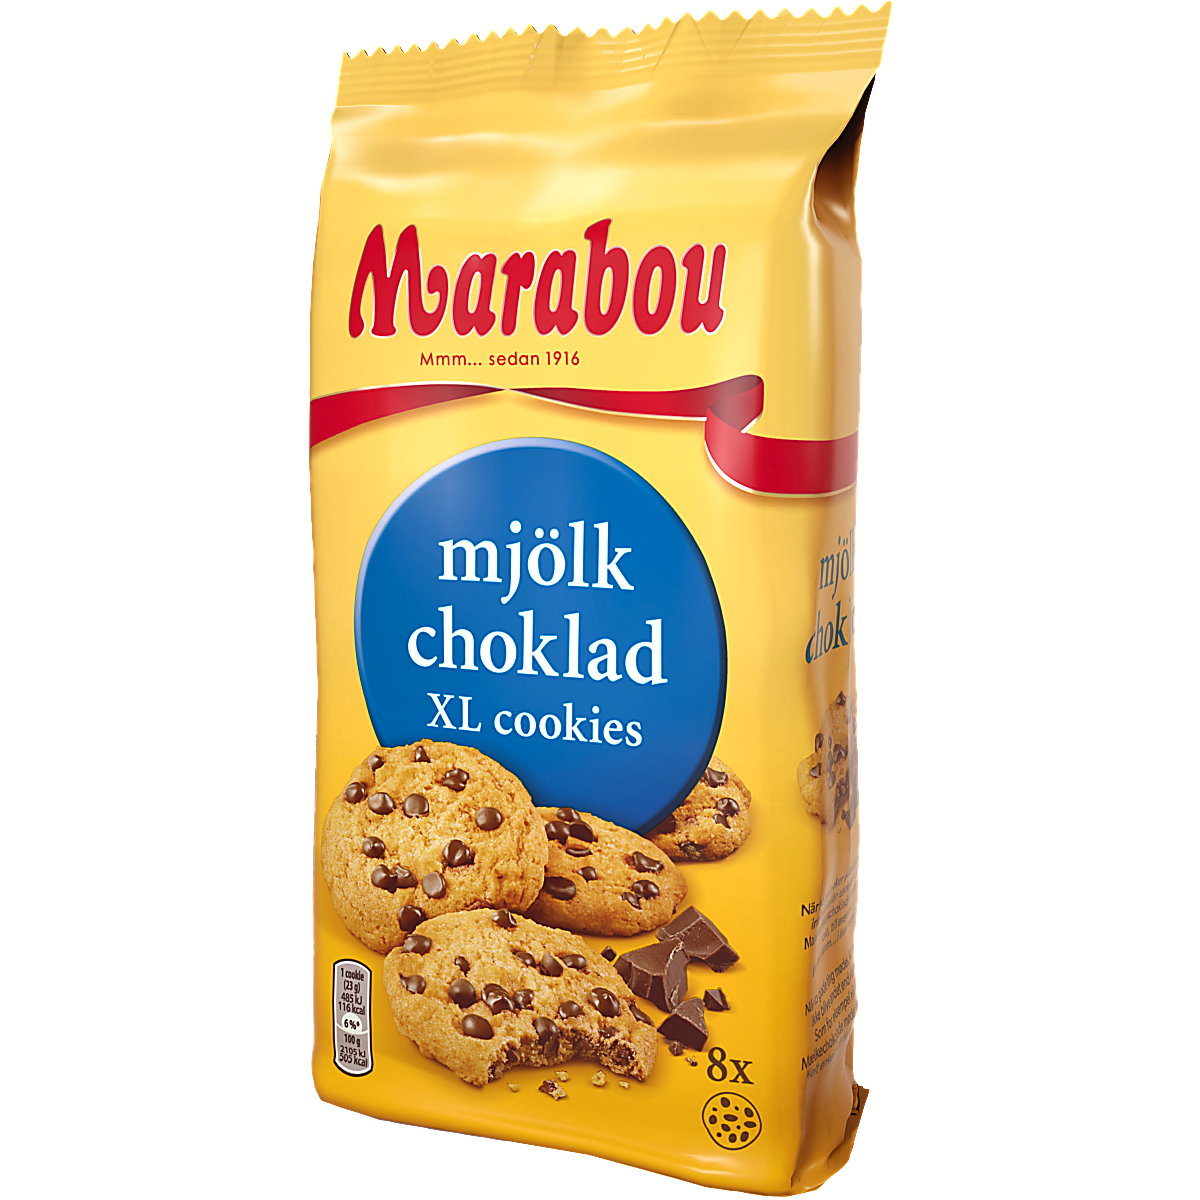 Marabou Galletas XL de chocolate con leche by Swedish Candy Store